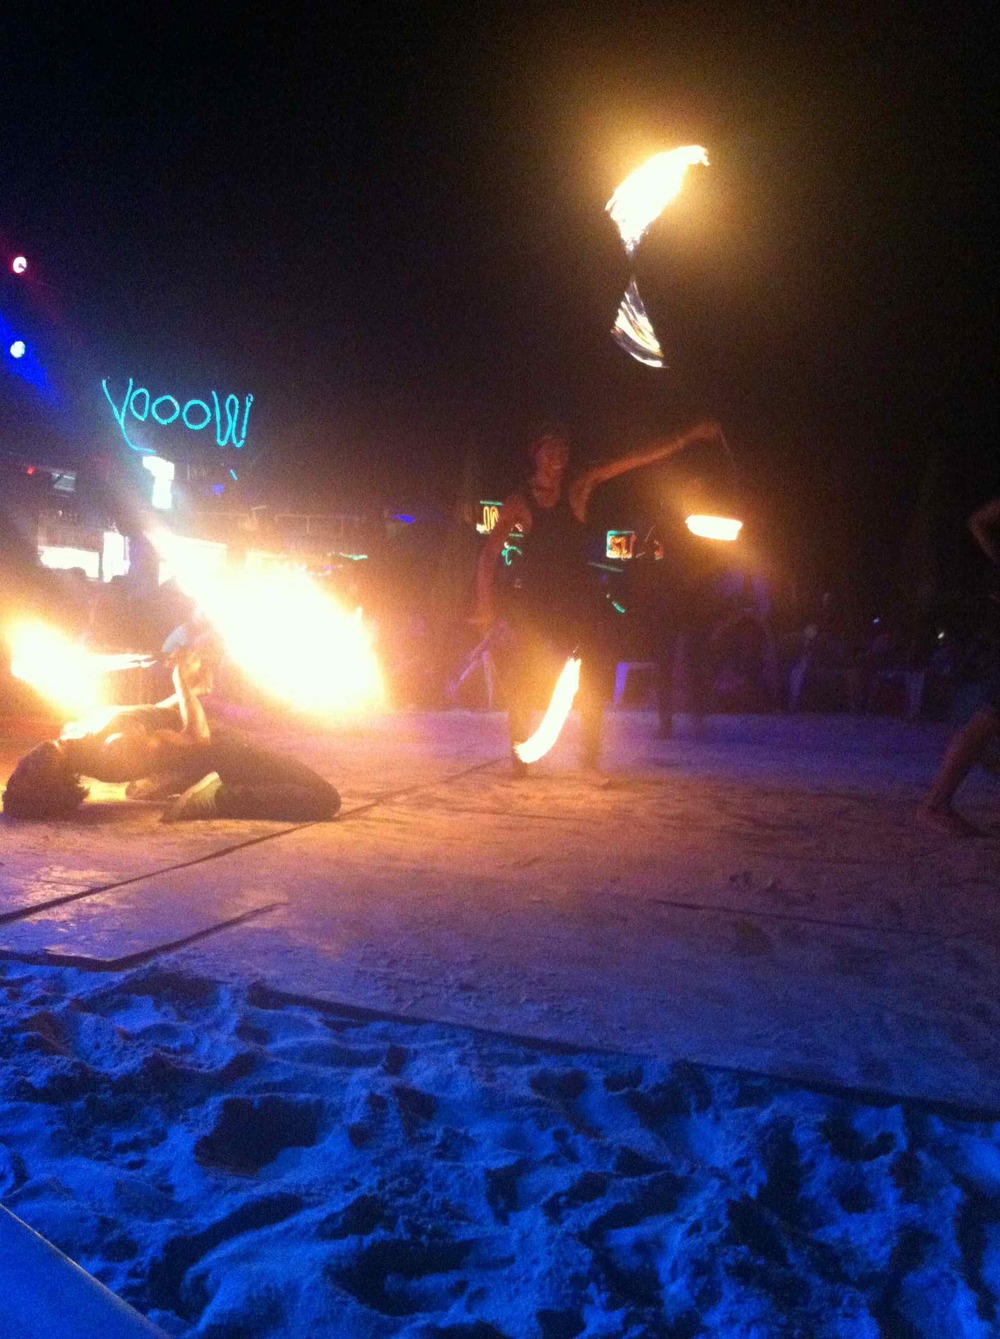 Fire Show on the Beach